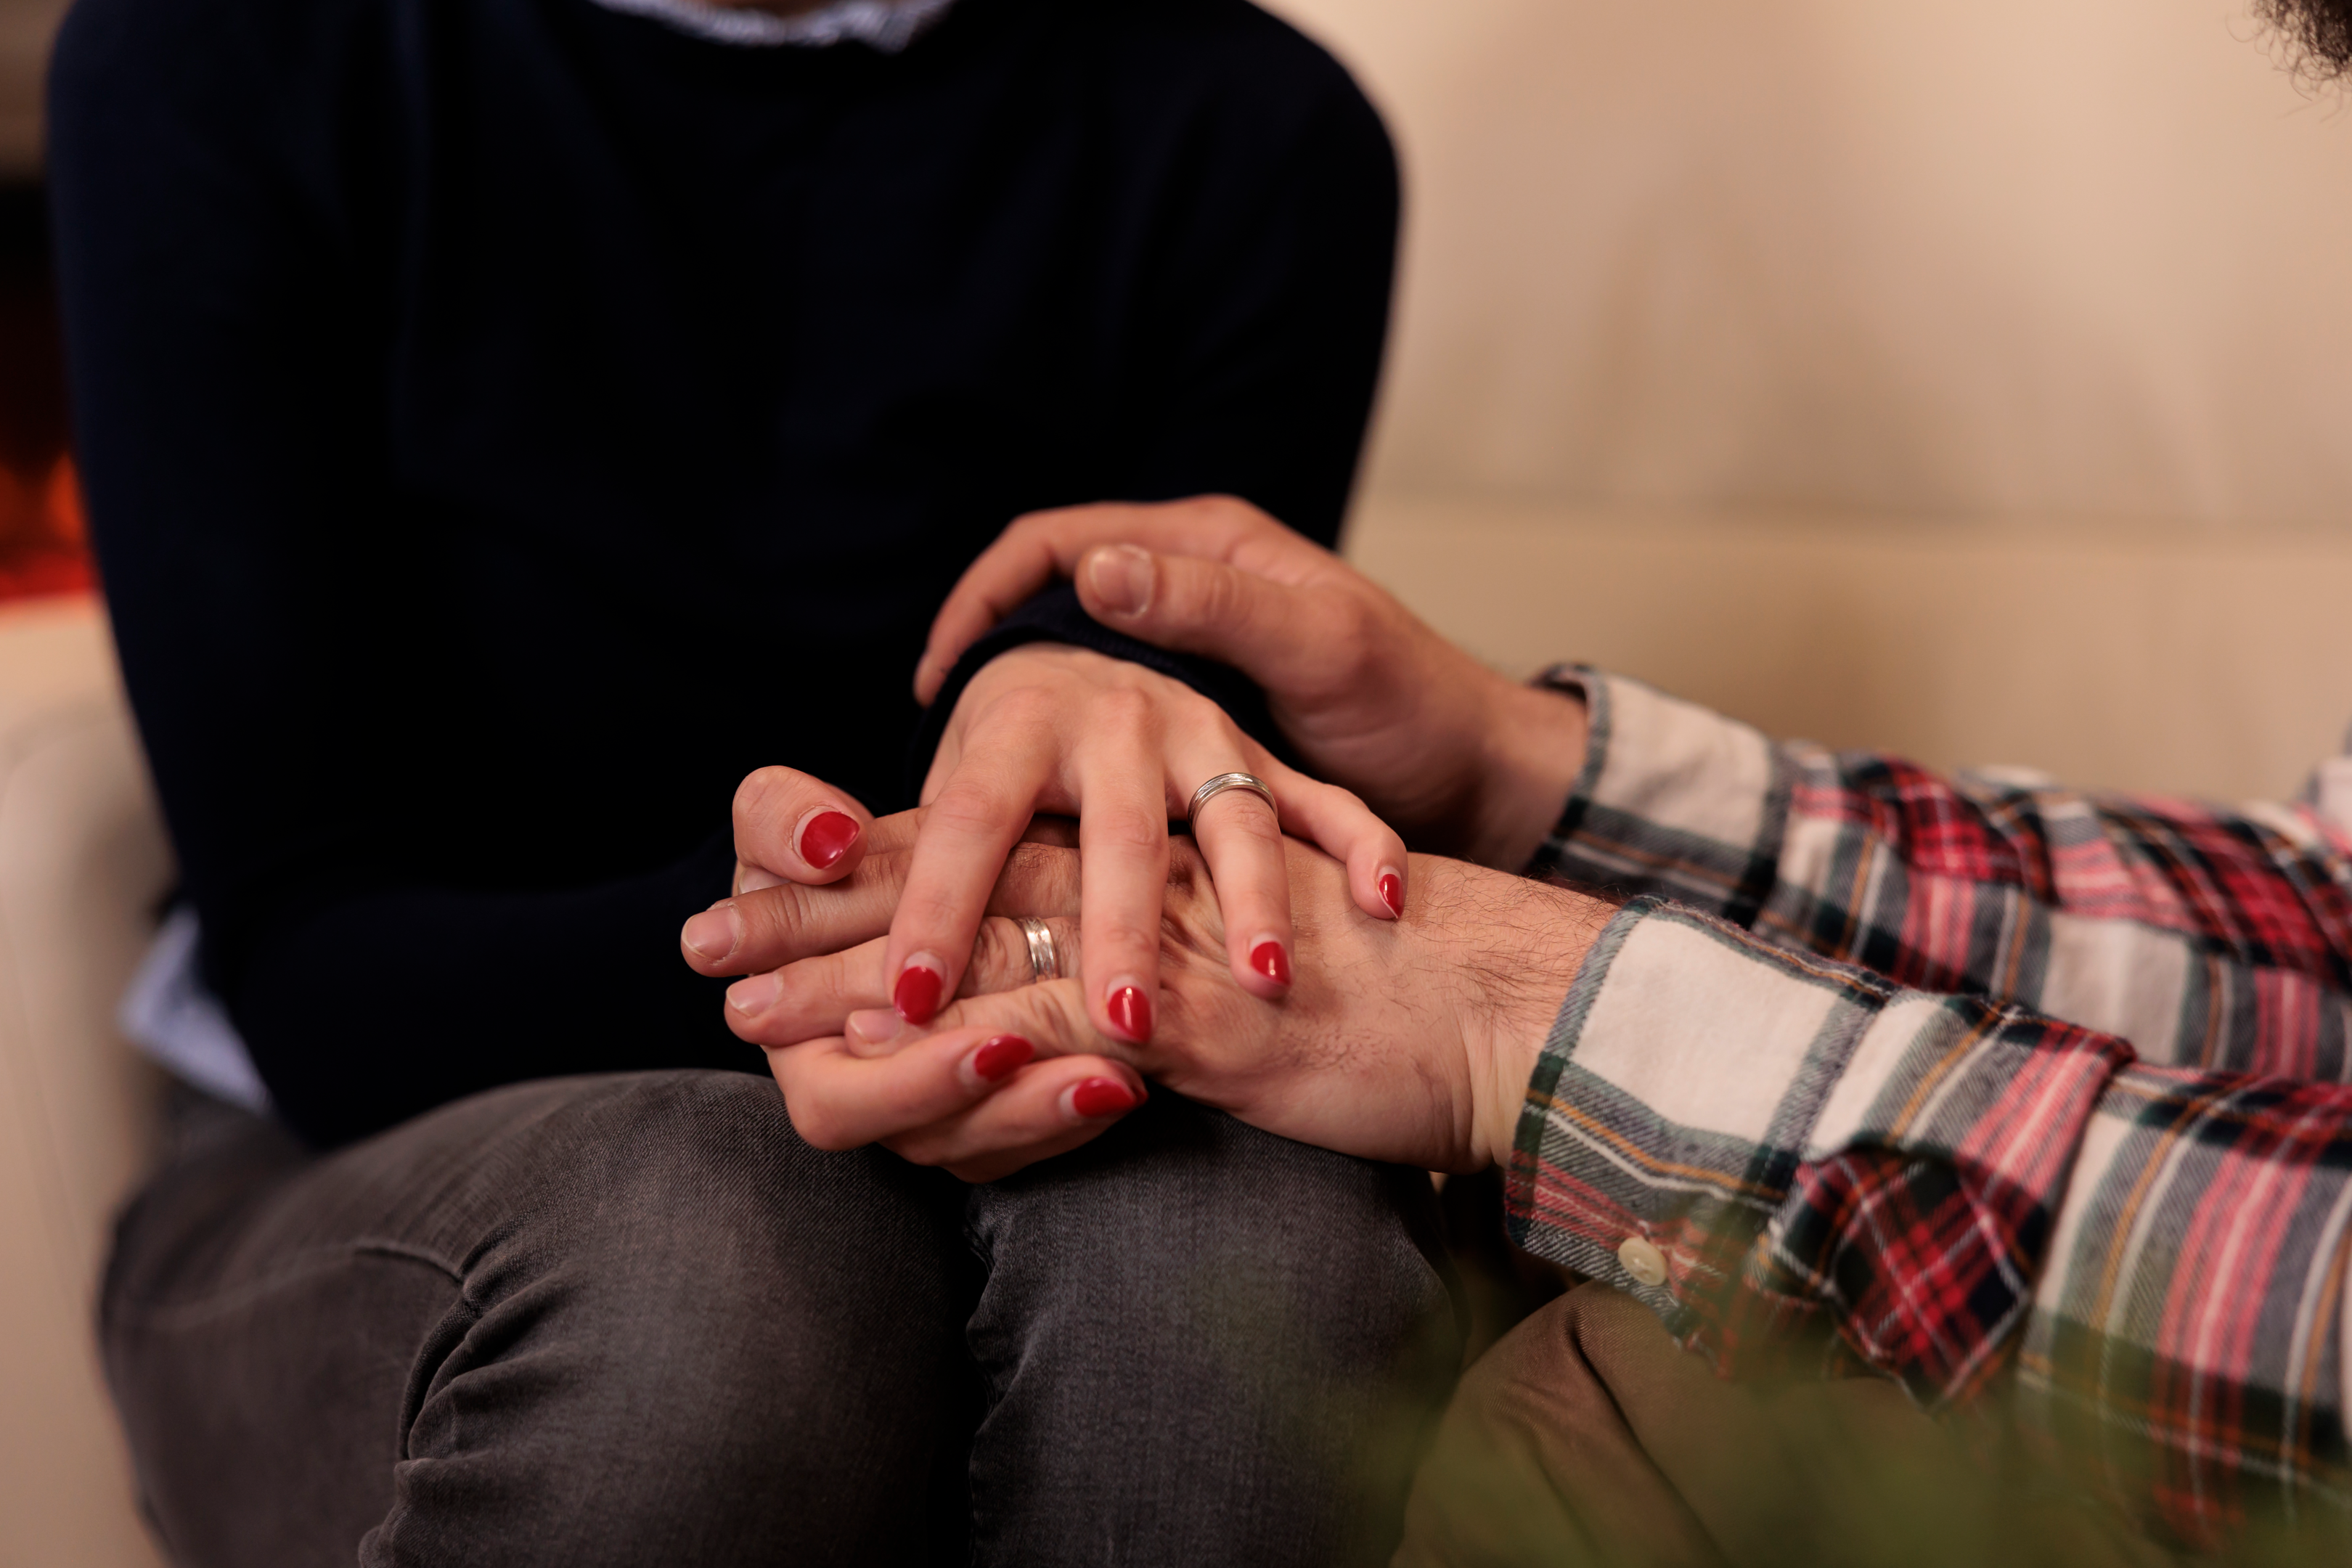 Trust and understanding between partners can increase sexual satisfaction.